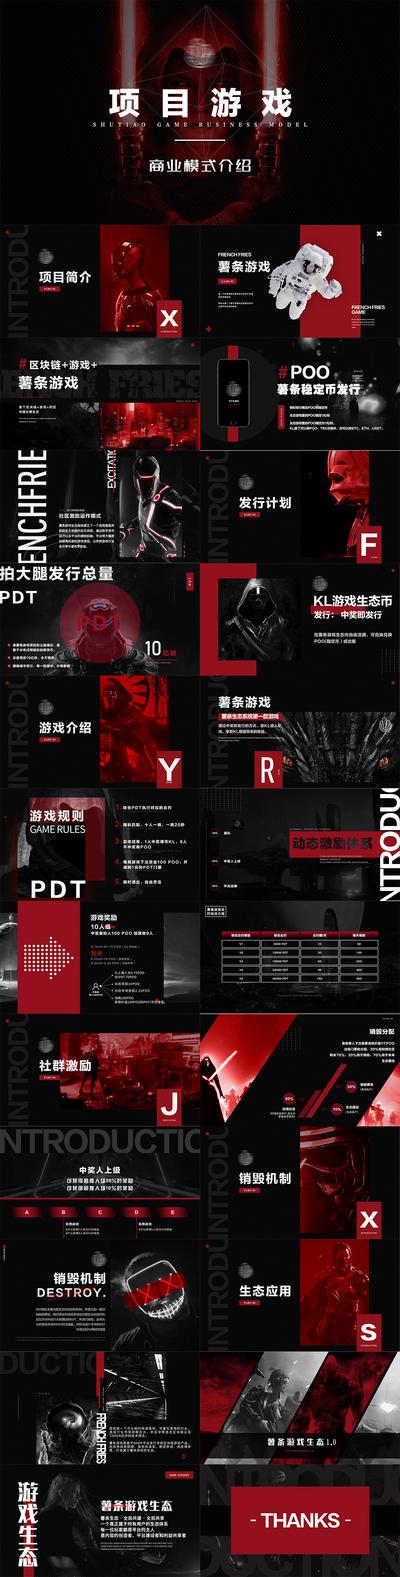 【南门网】PPT 计划书 区块链 王者 游戏 商业 PDF 炫酷 红色 黑红